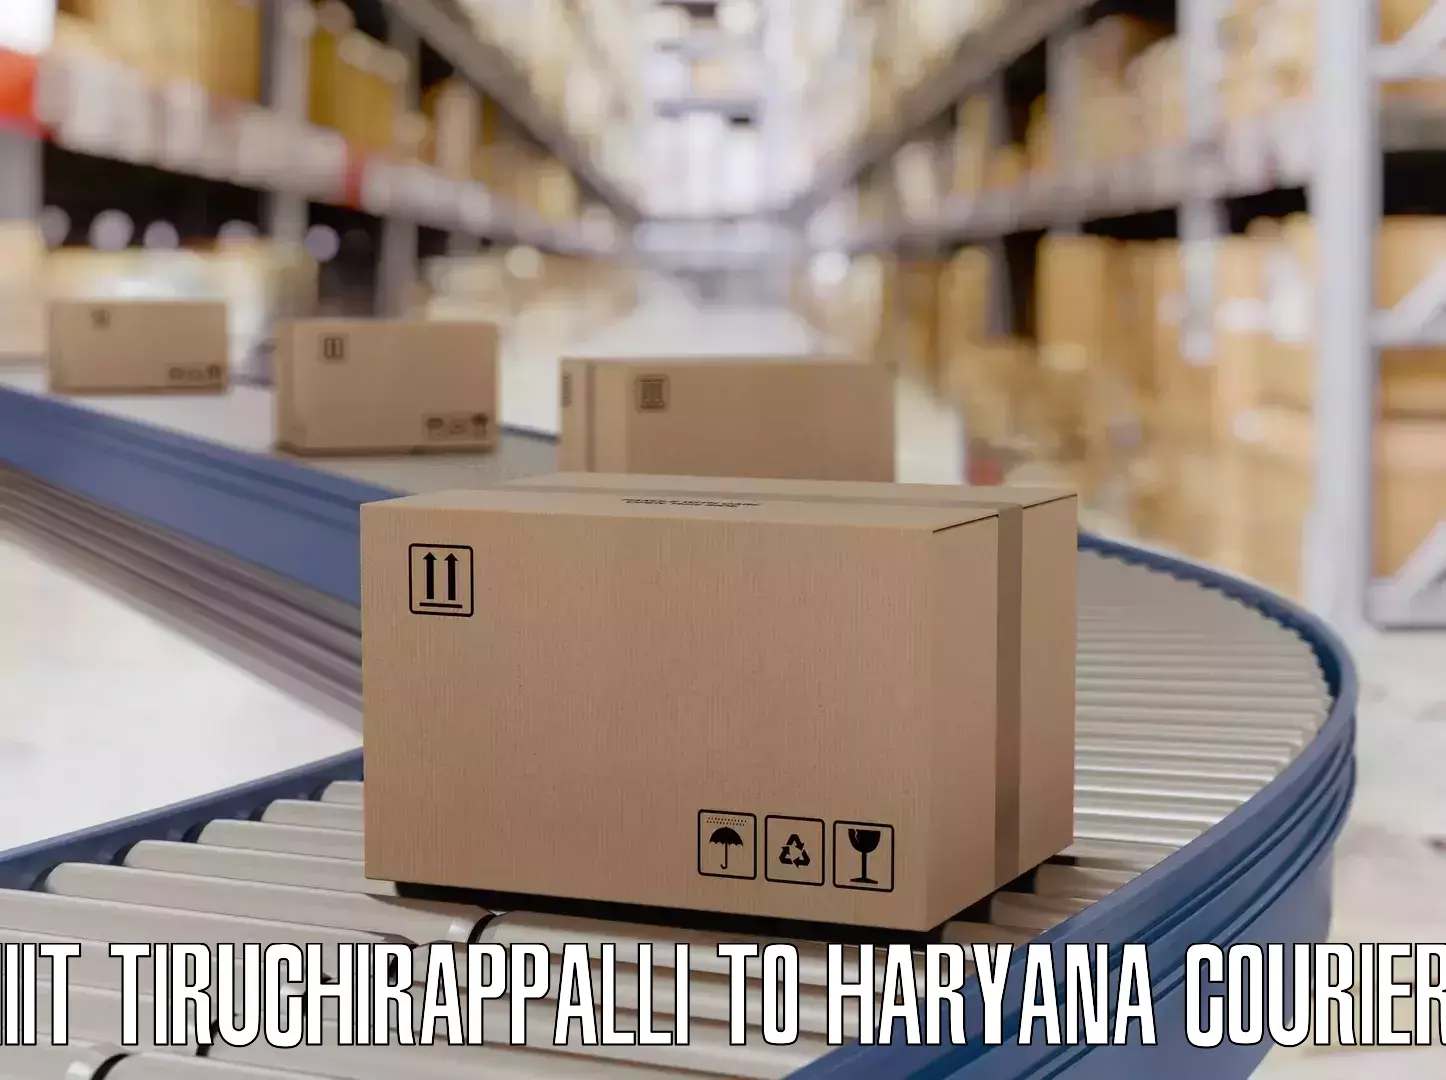 Holiday season luggage delivery IIIT Tiruchirappalli to NCR Haryana